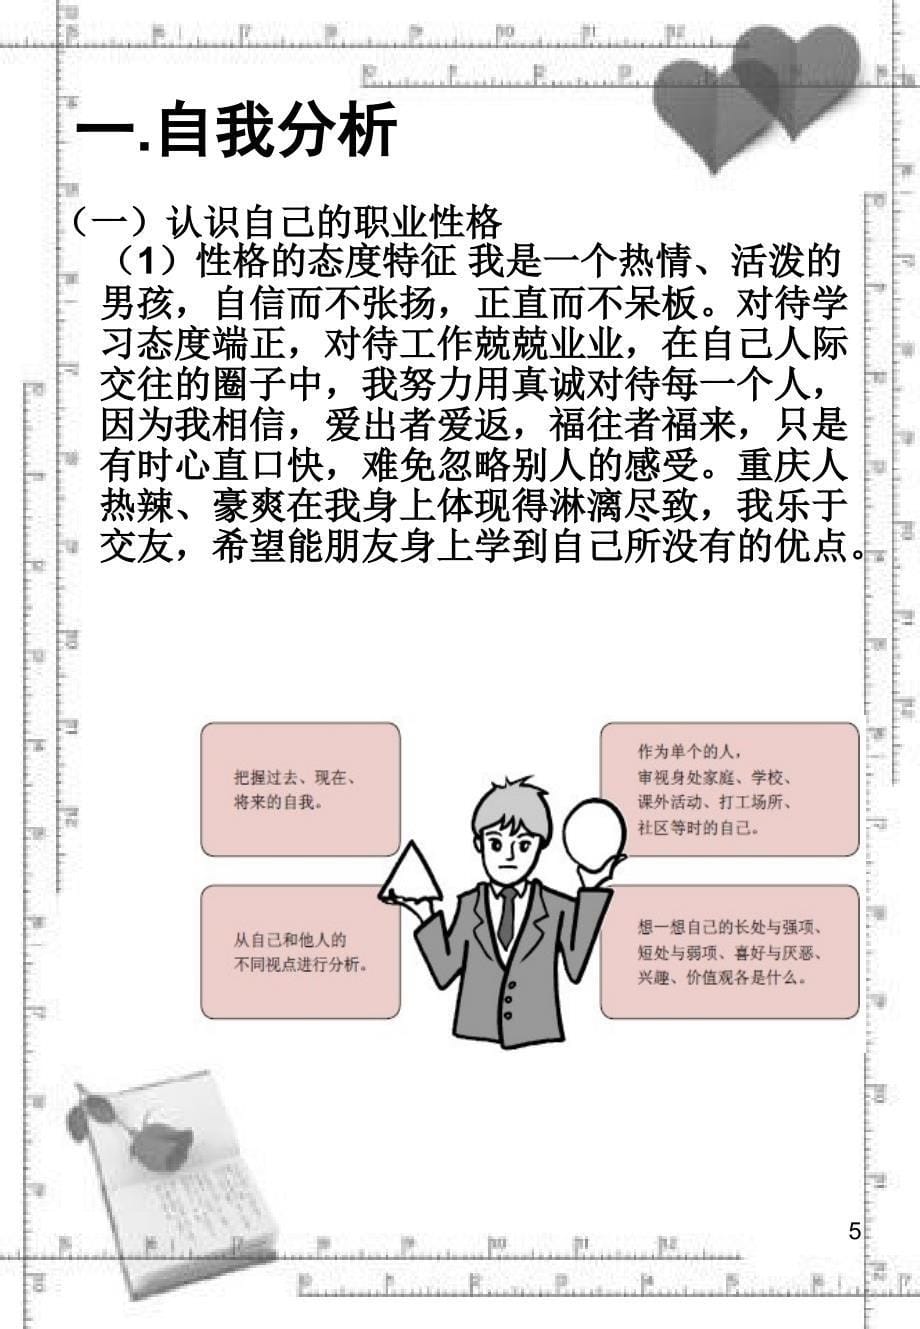 中职生职业生涯规划ppt课件 (2).ppt_第5页